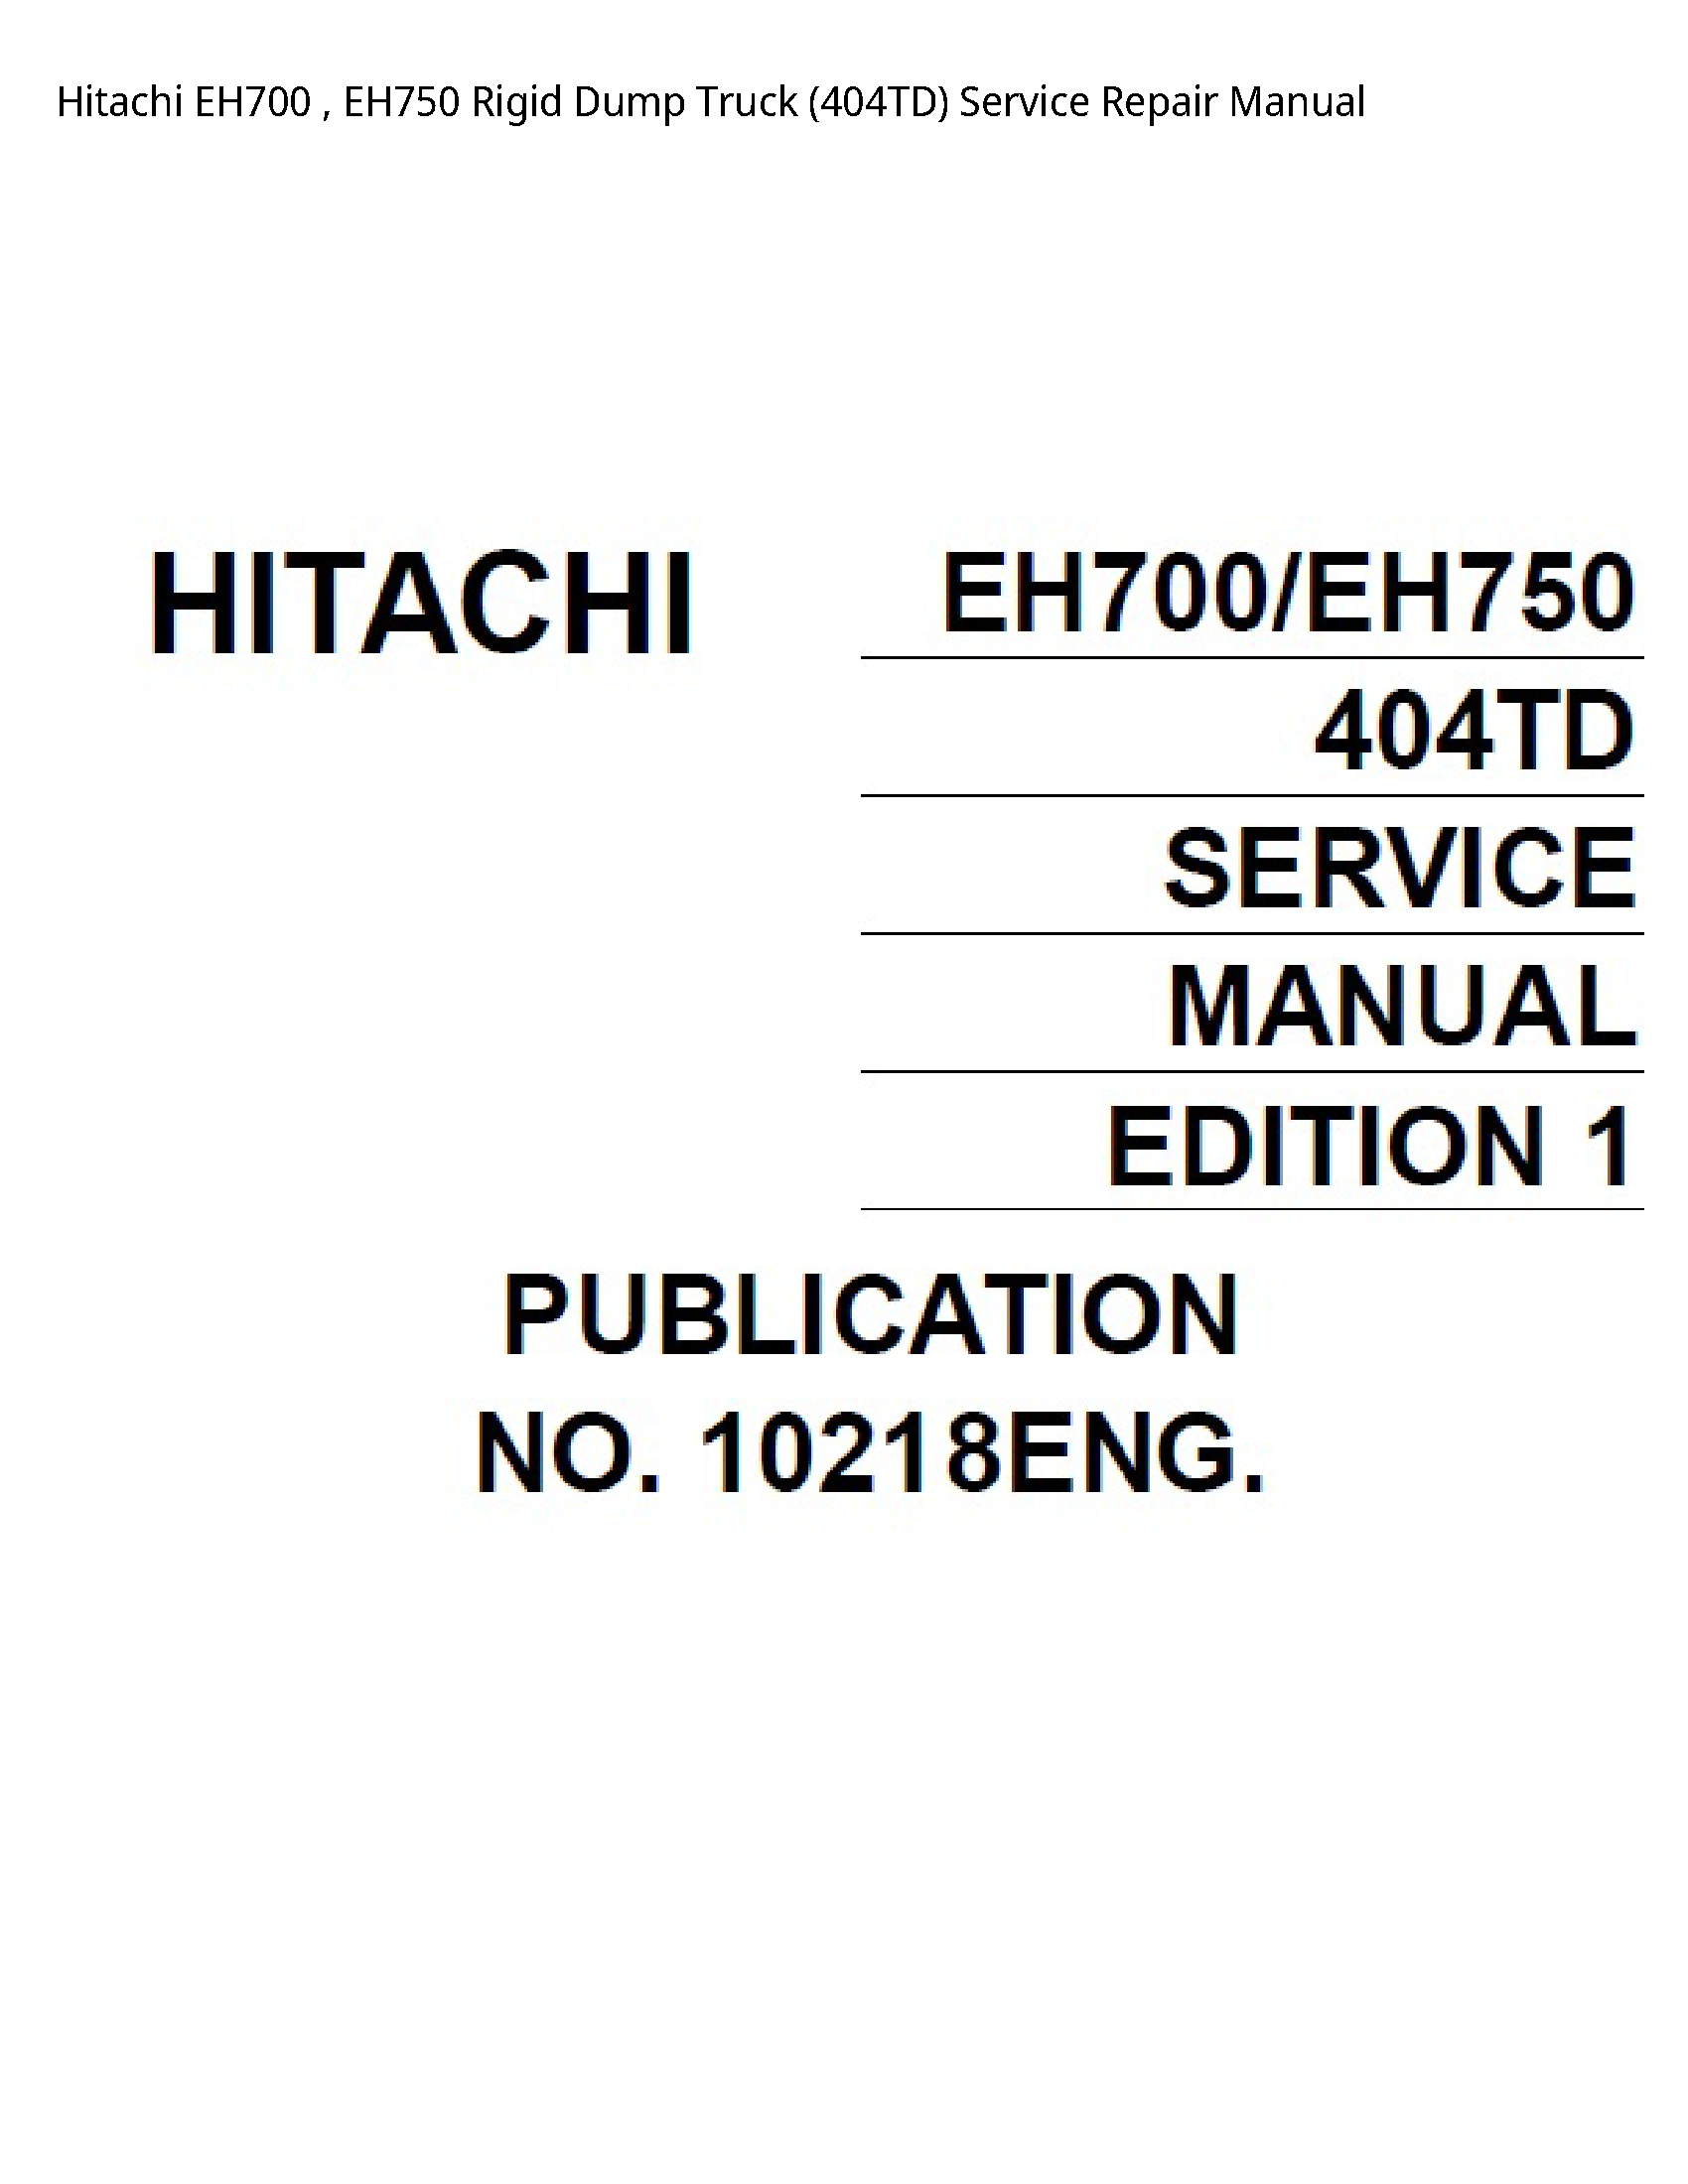 Hitachi EH700 Rigid Dump Truck manual